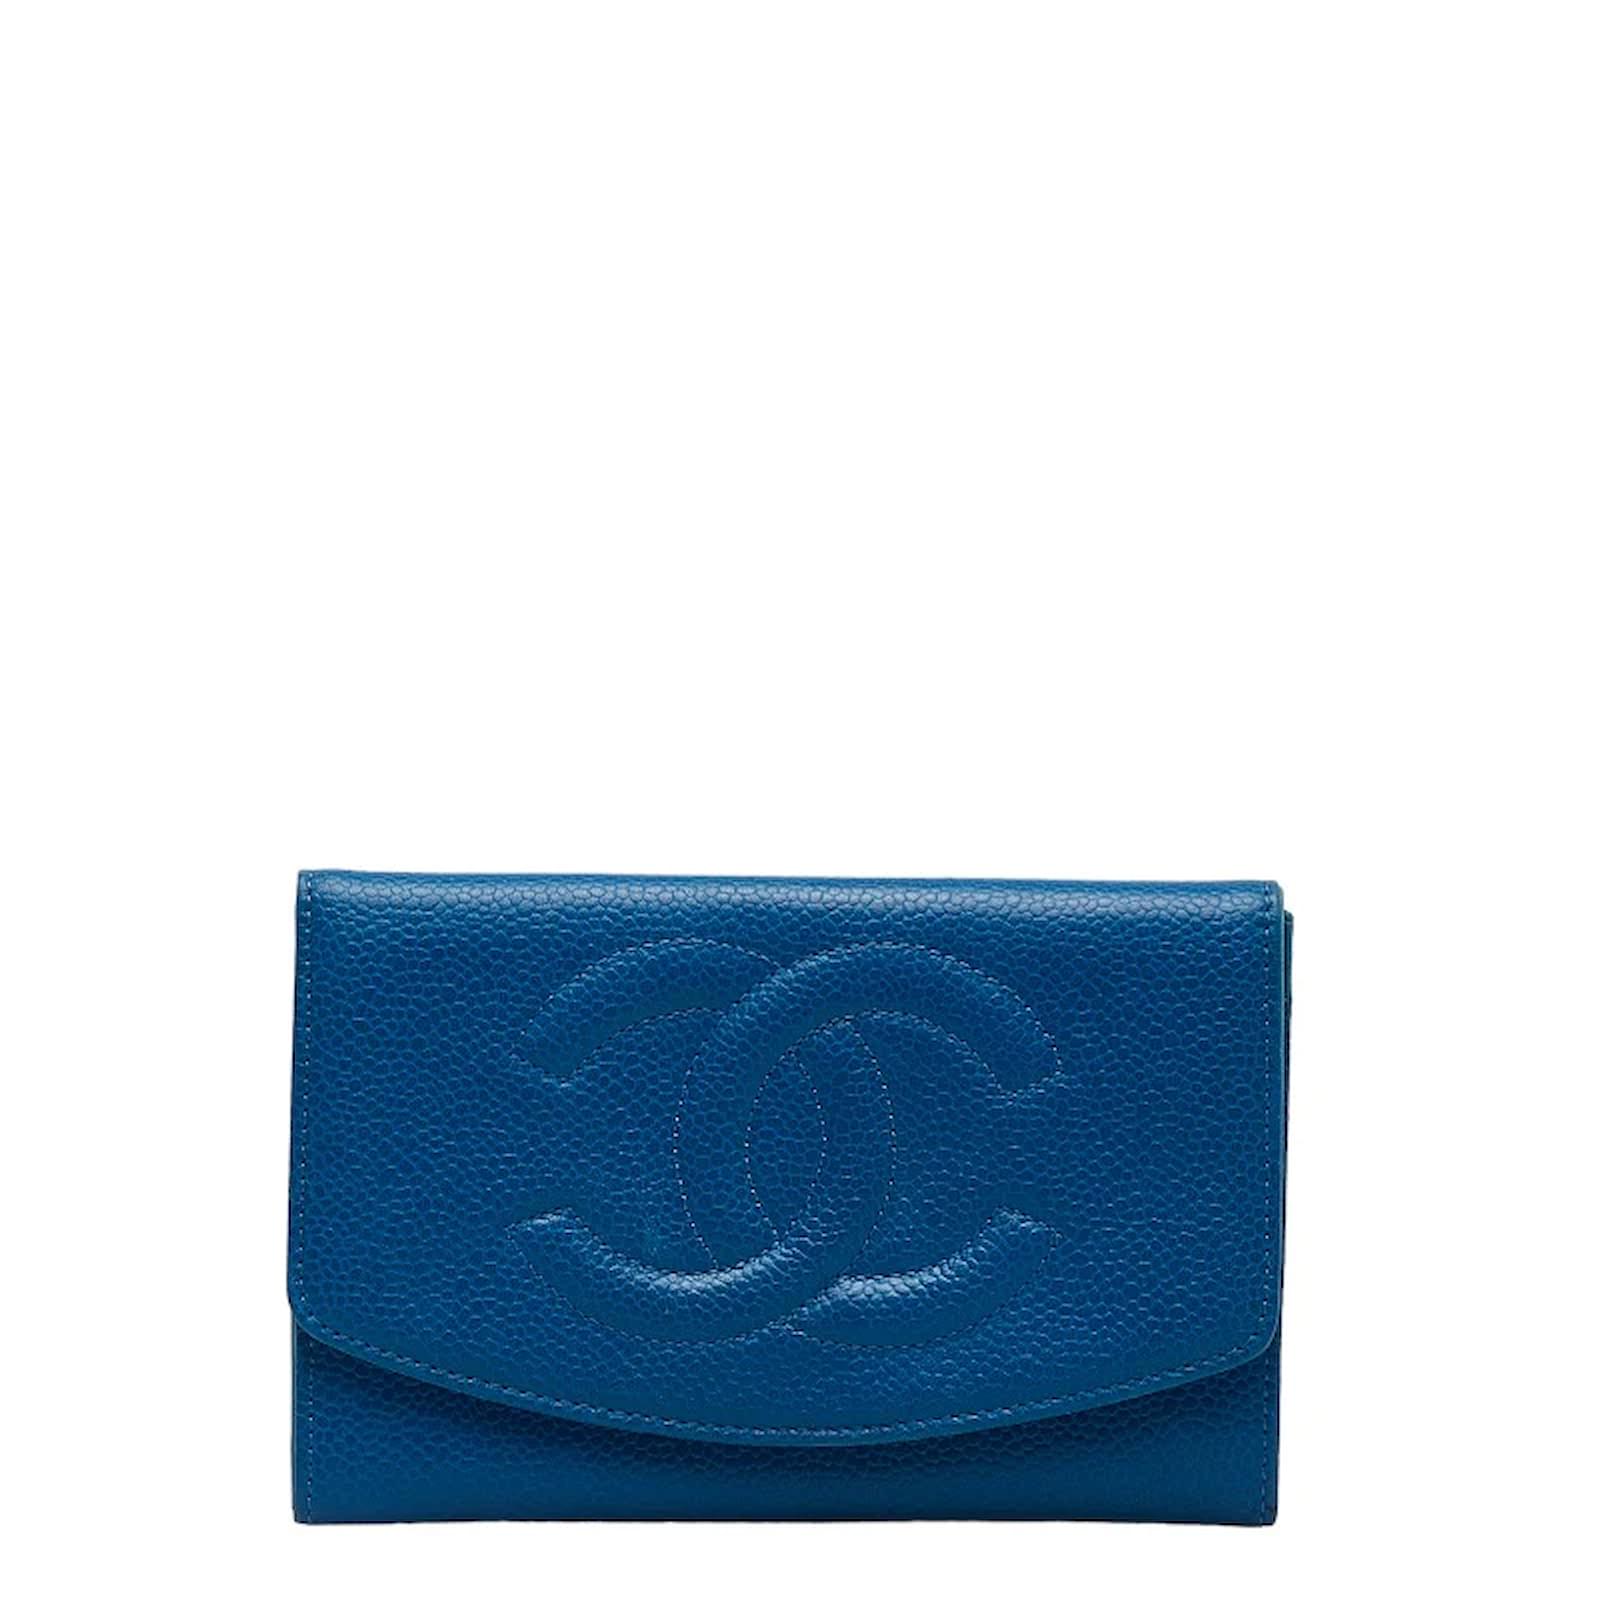 blue chanel flap wallet